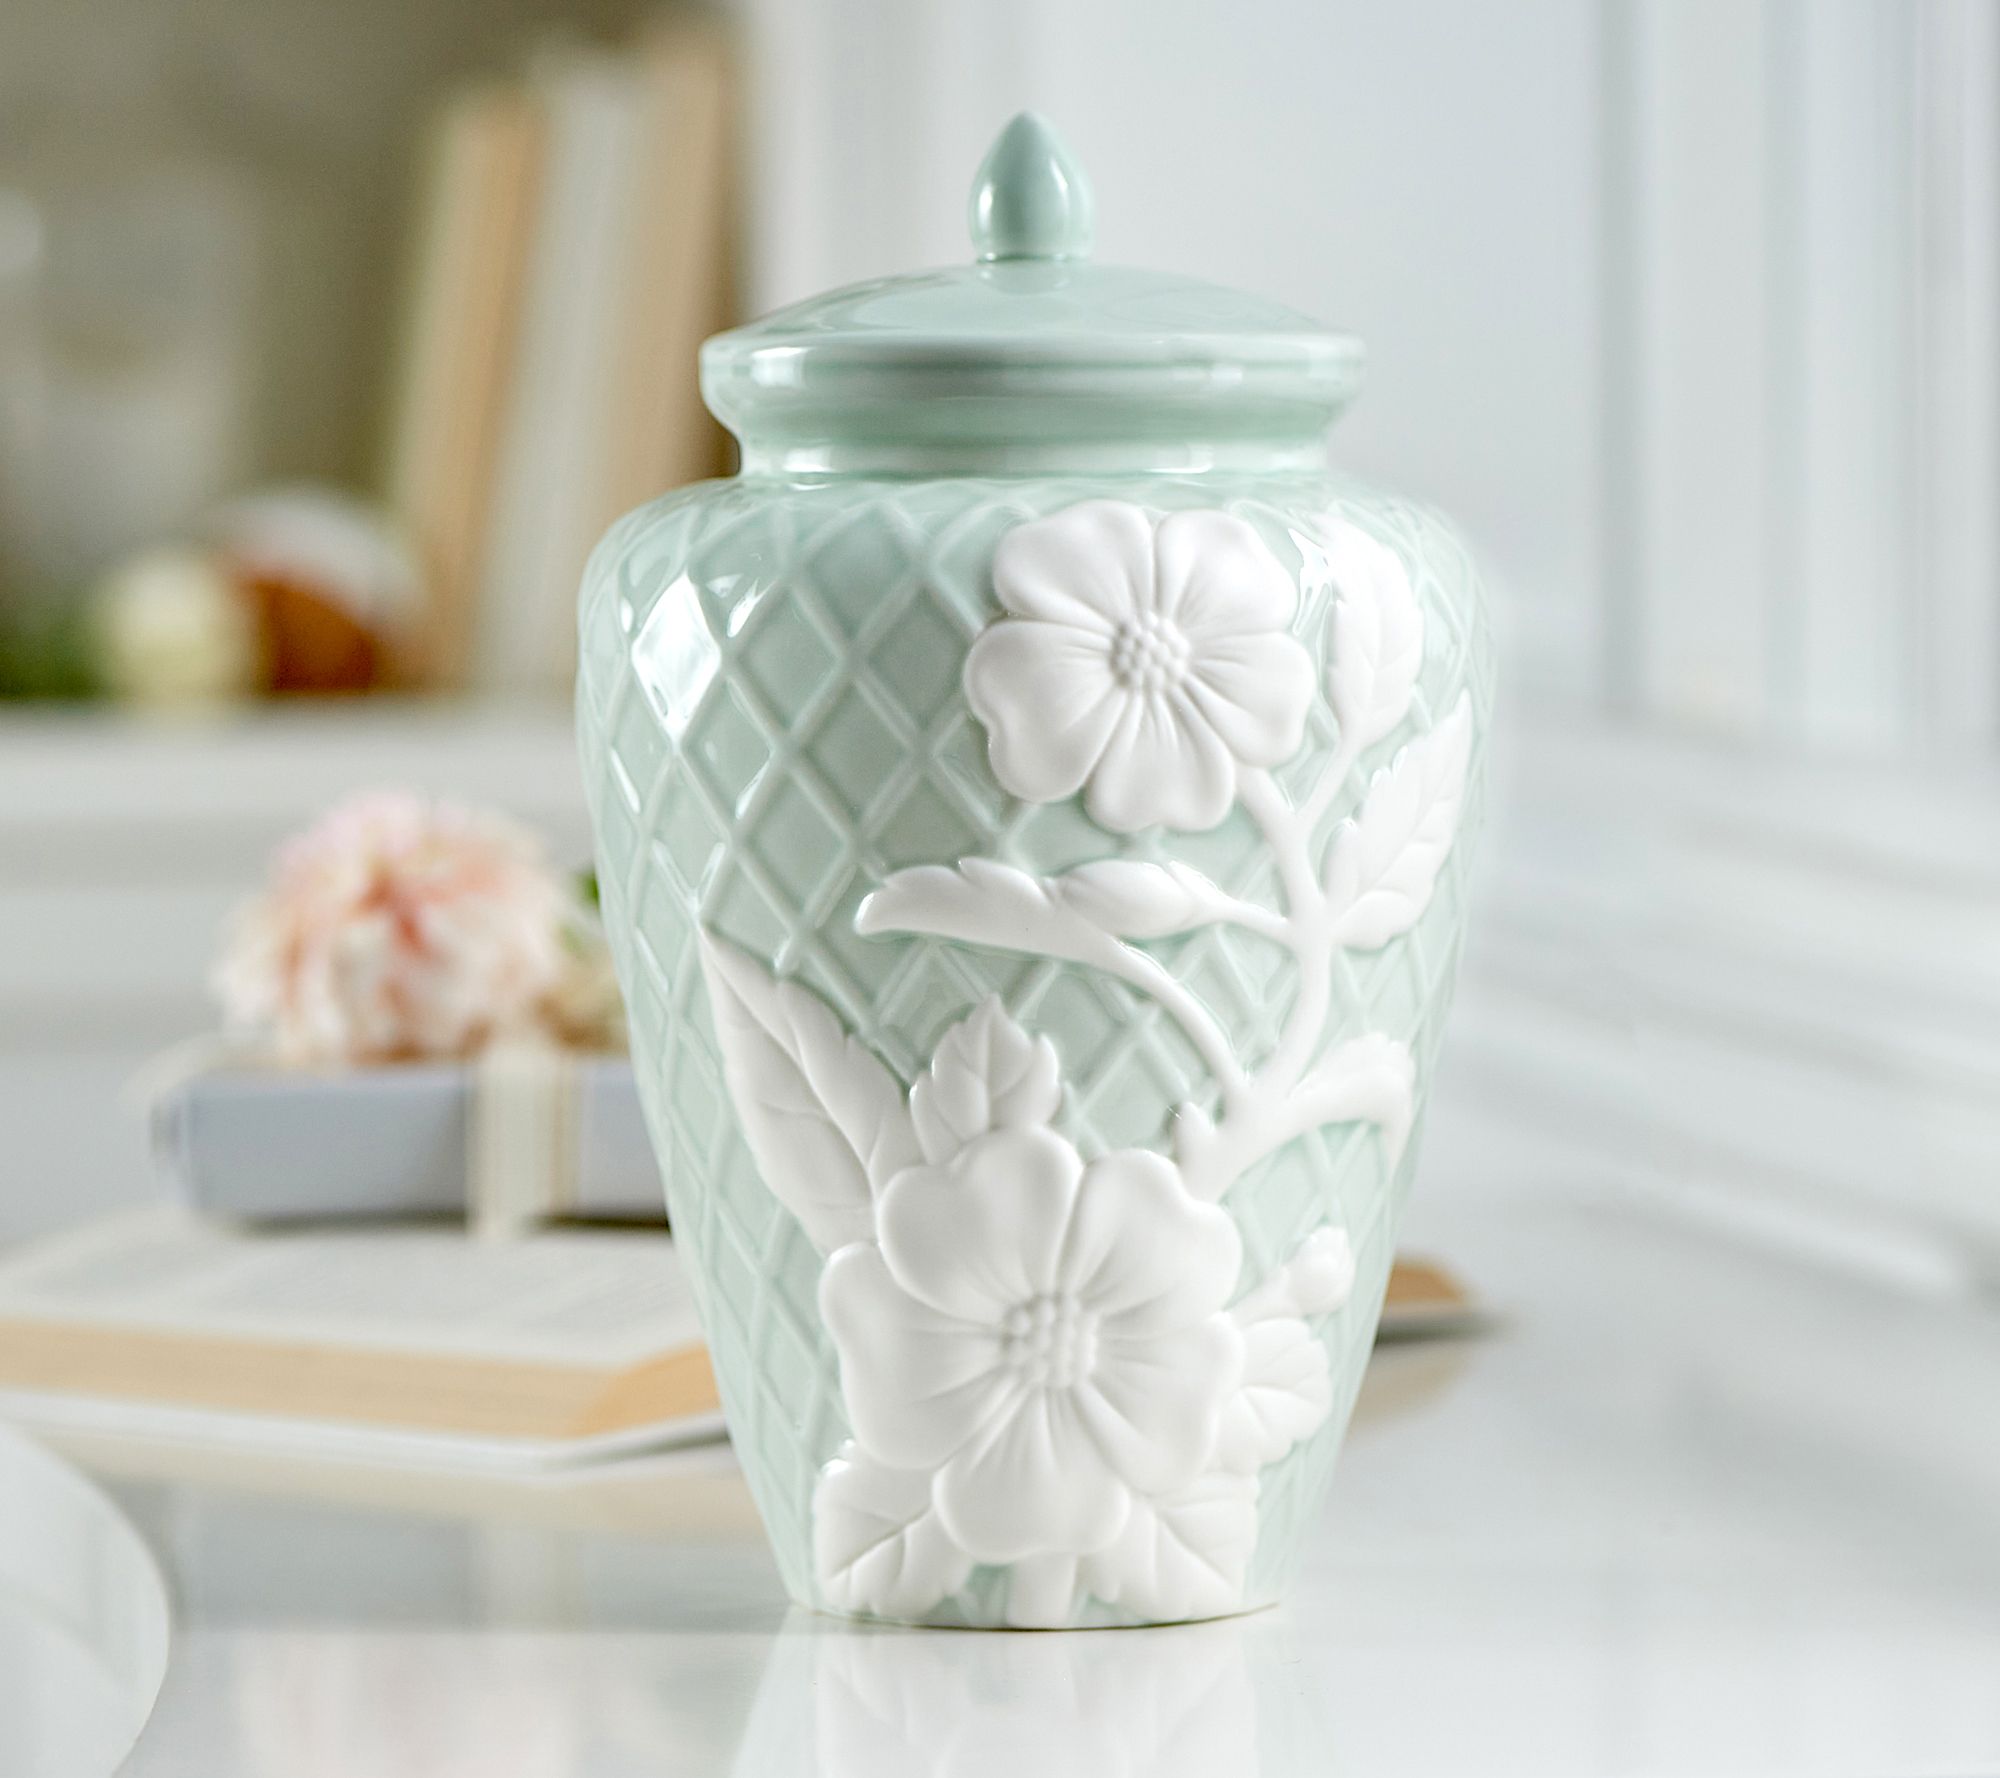 10 Illuminated Floral Embossed Porcelain Ginger Jar by Valerie